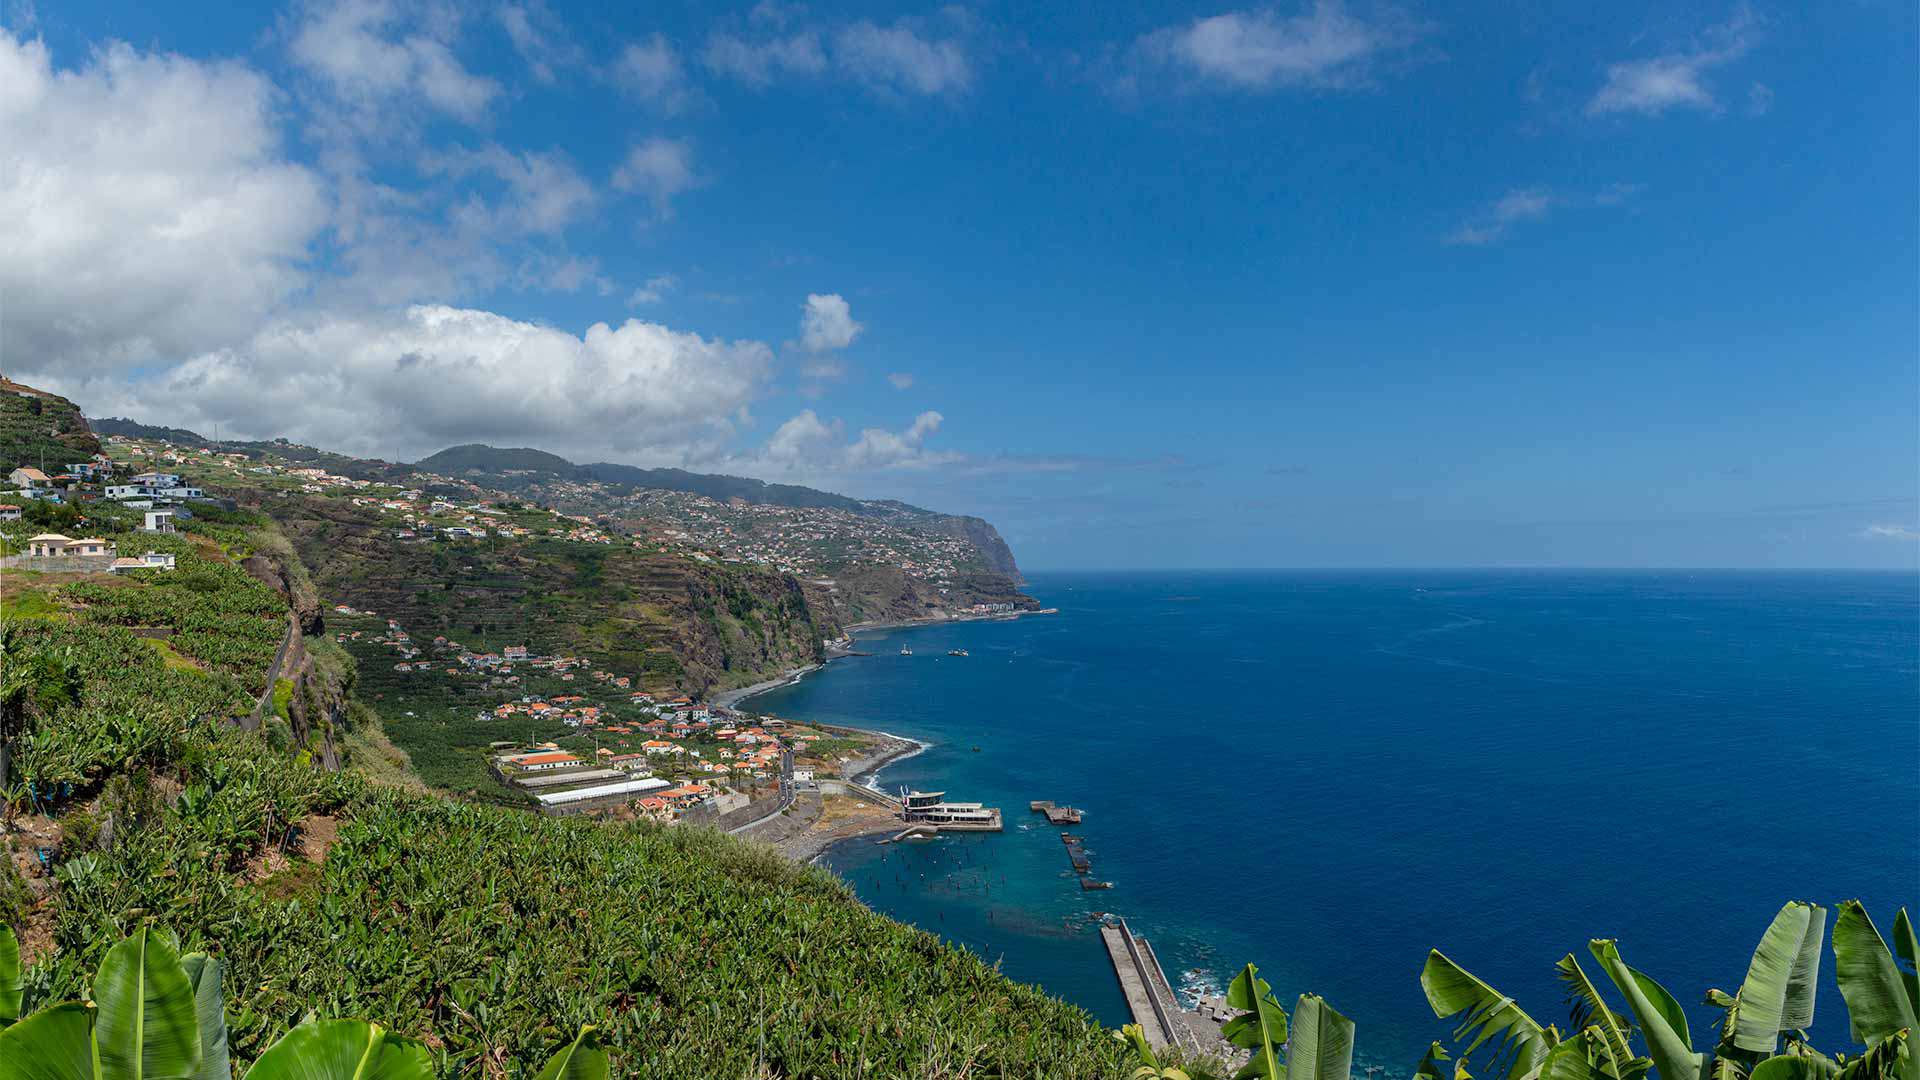 Ponta do Sol - Visit Madeira  Madeira Islands Tourism Board official  website